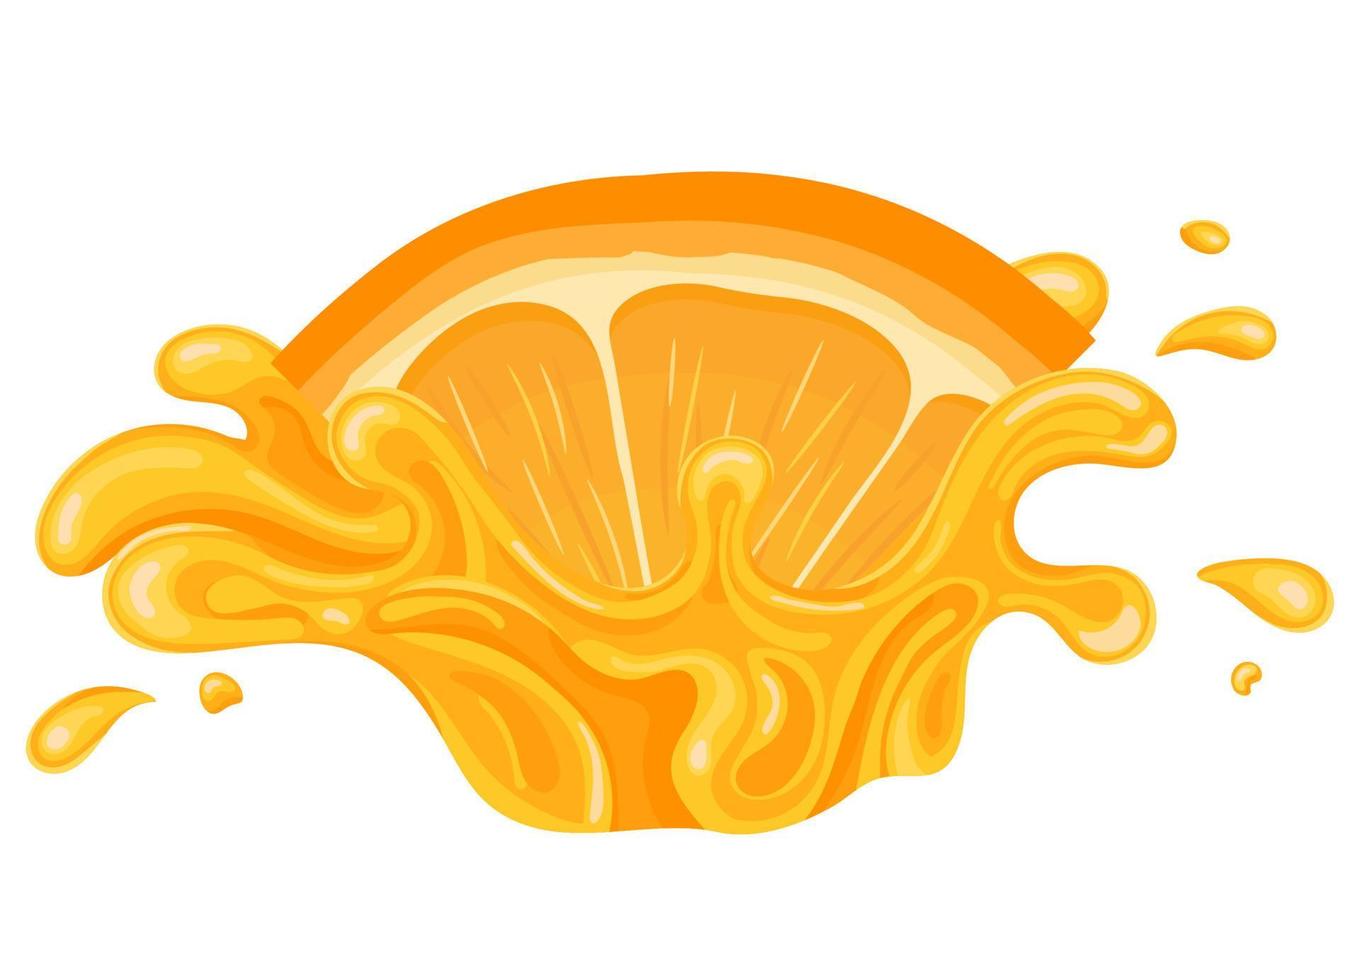 frischer leuchtender Orangen-, Mandarinen- oder Mandarinensaftspritzer platzte isoliert auf weißem Hintergrund. Sommerfruchtsaft. Cartoon-Stil. Vektorillustration für jedes Design. vektor